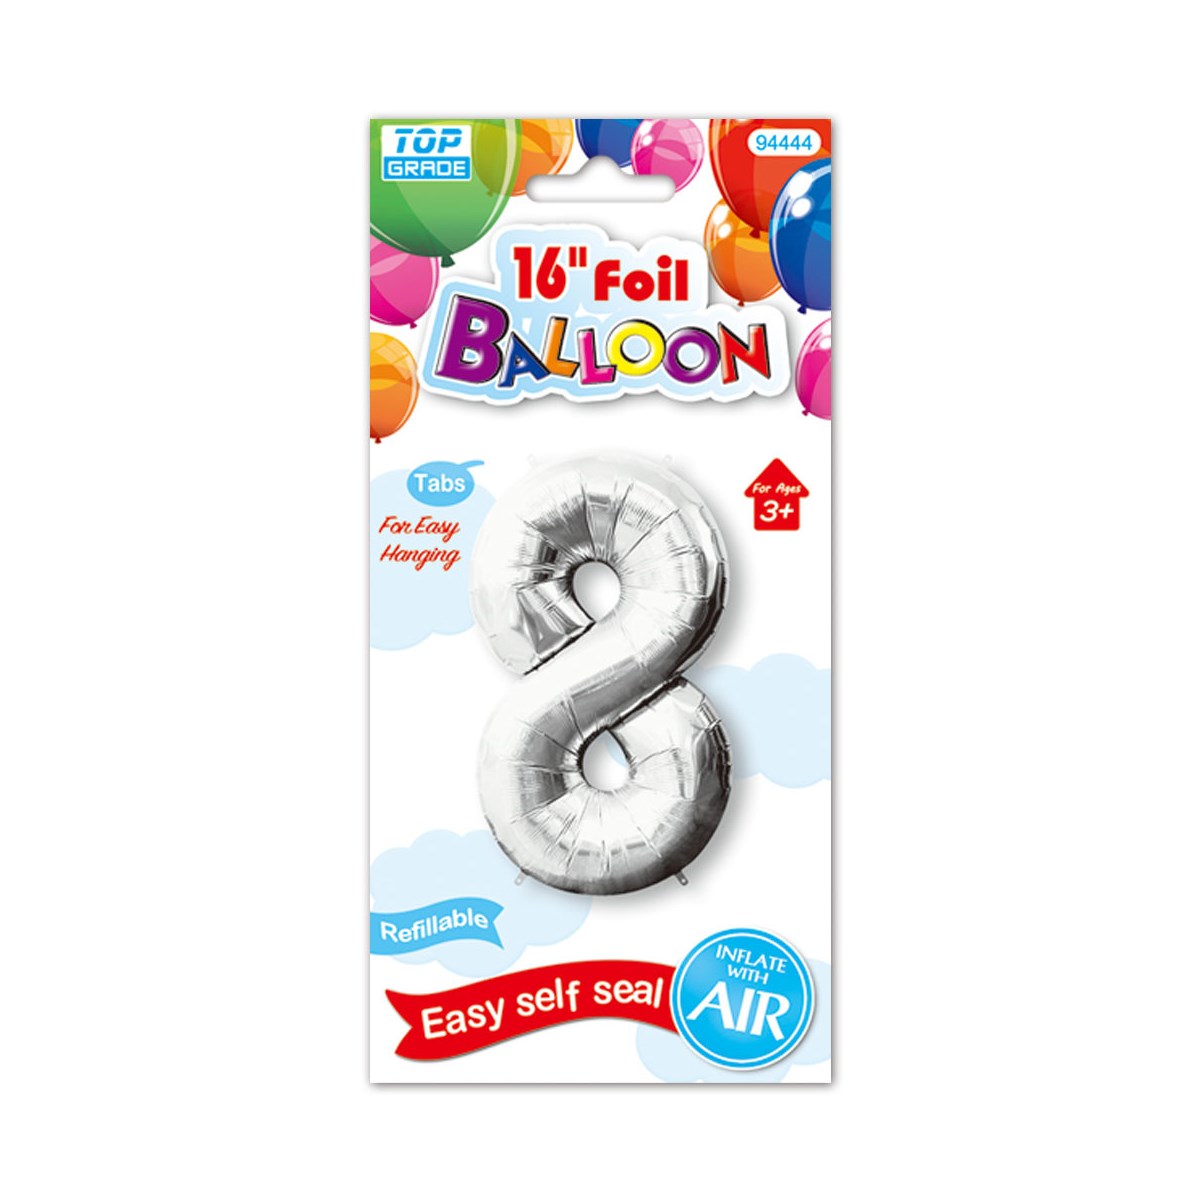 16"foil balloon silv #8 12/600